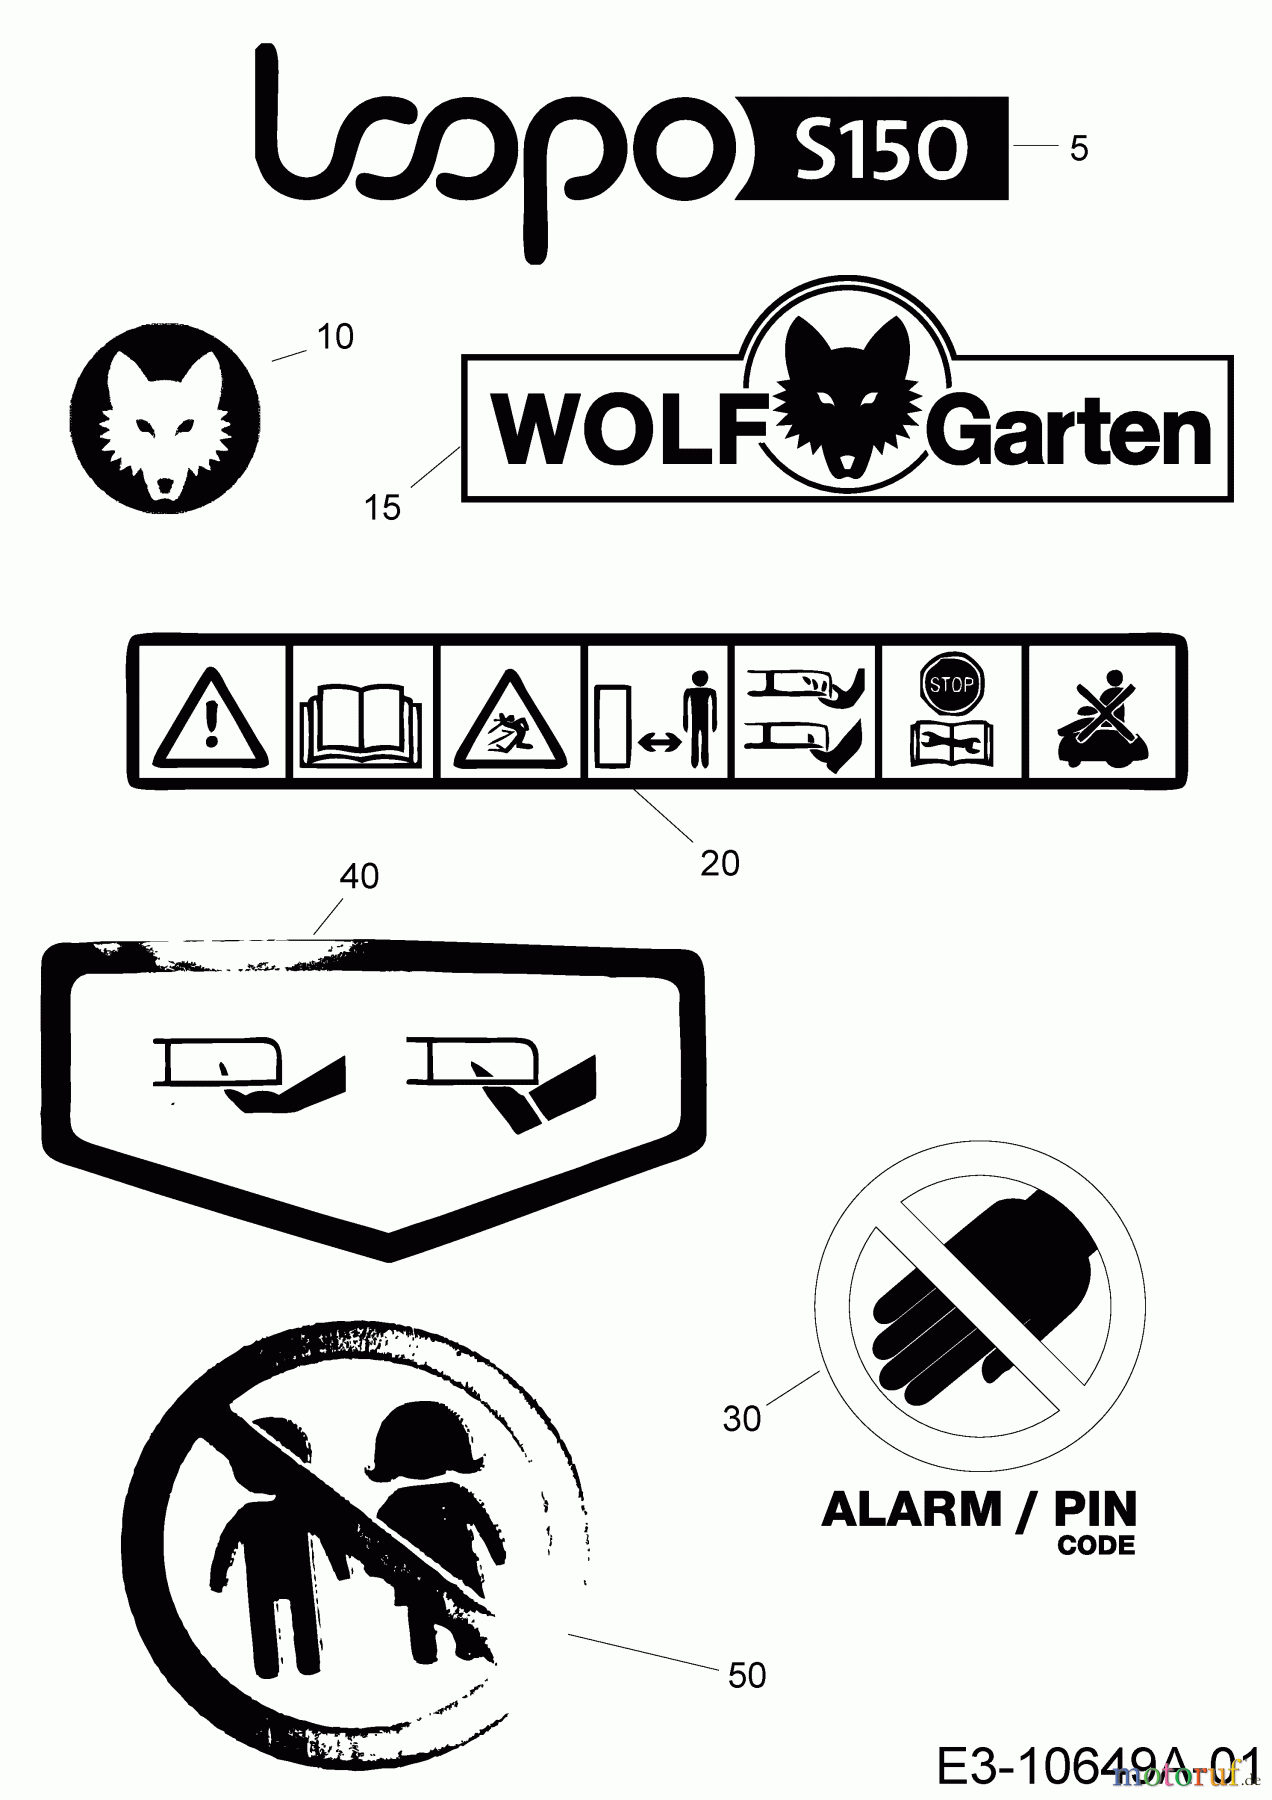  Wolf-Garten Robotic lawn mower Loopo S150 22BXBACA650 (2020) Labels